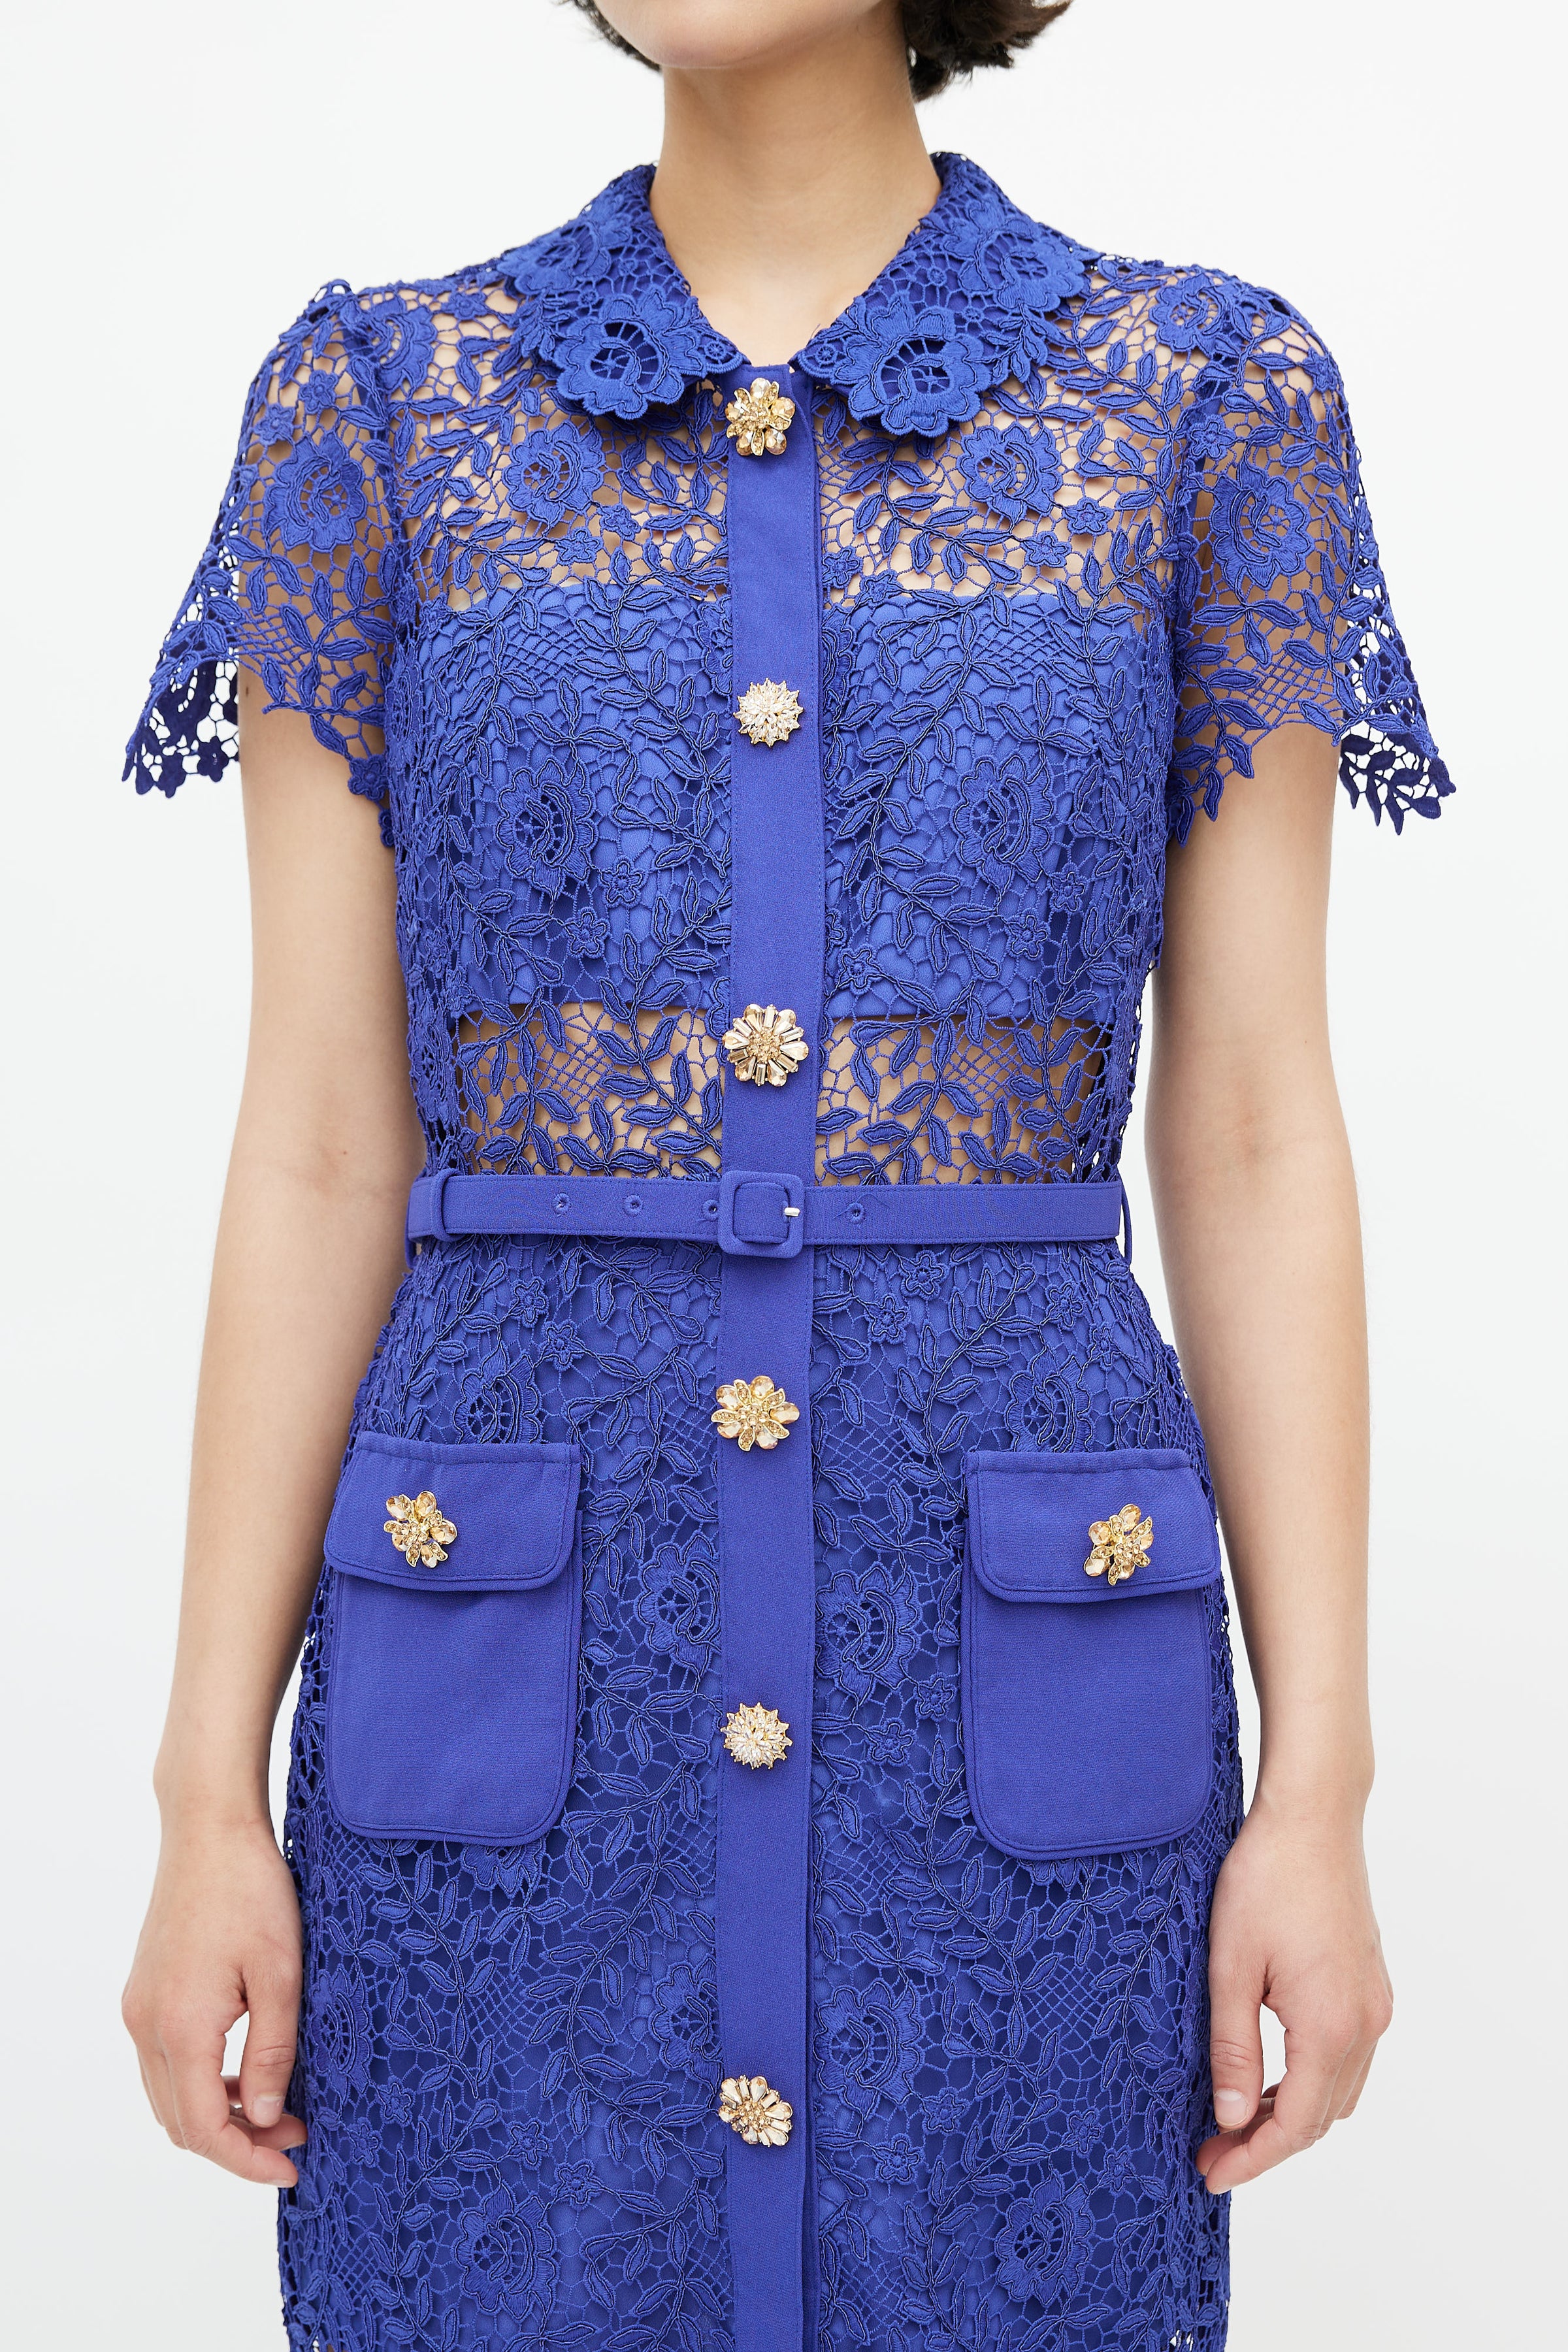 Self-Portrait // Cobalt Blue Rose Lace Button Dress – VSP Consignment